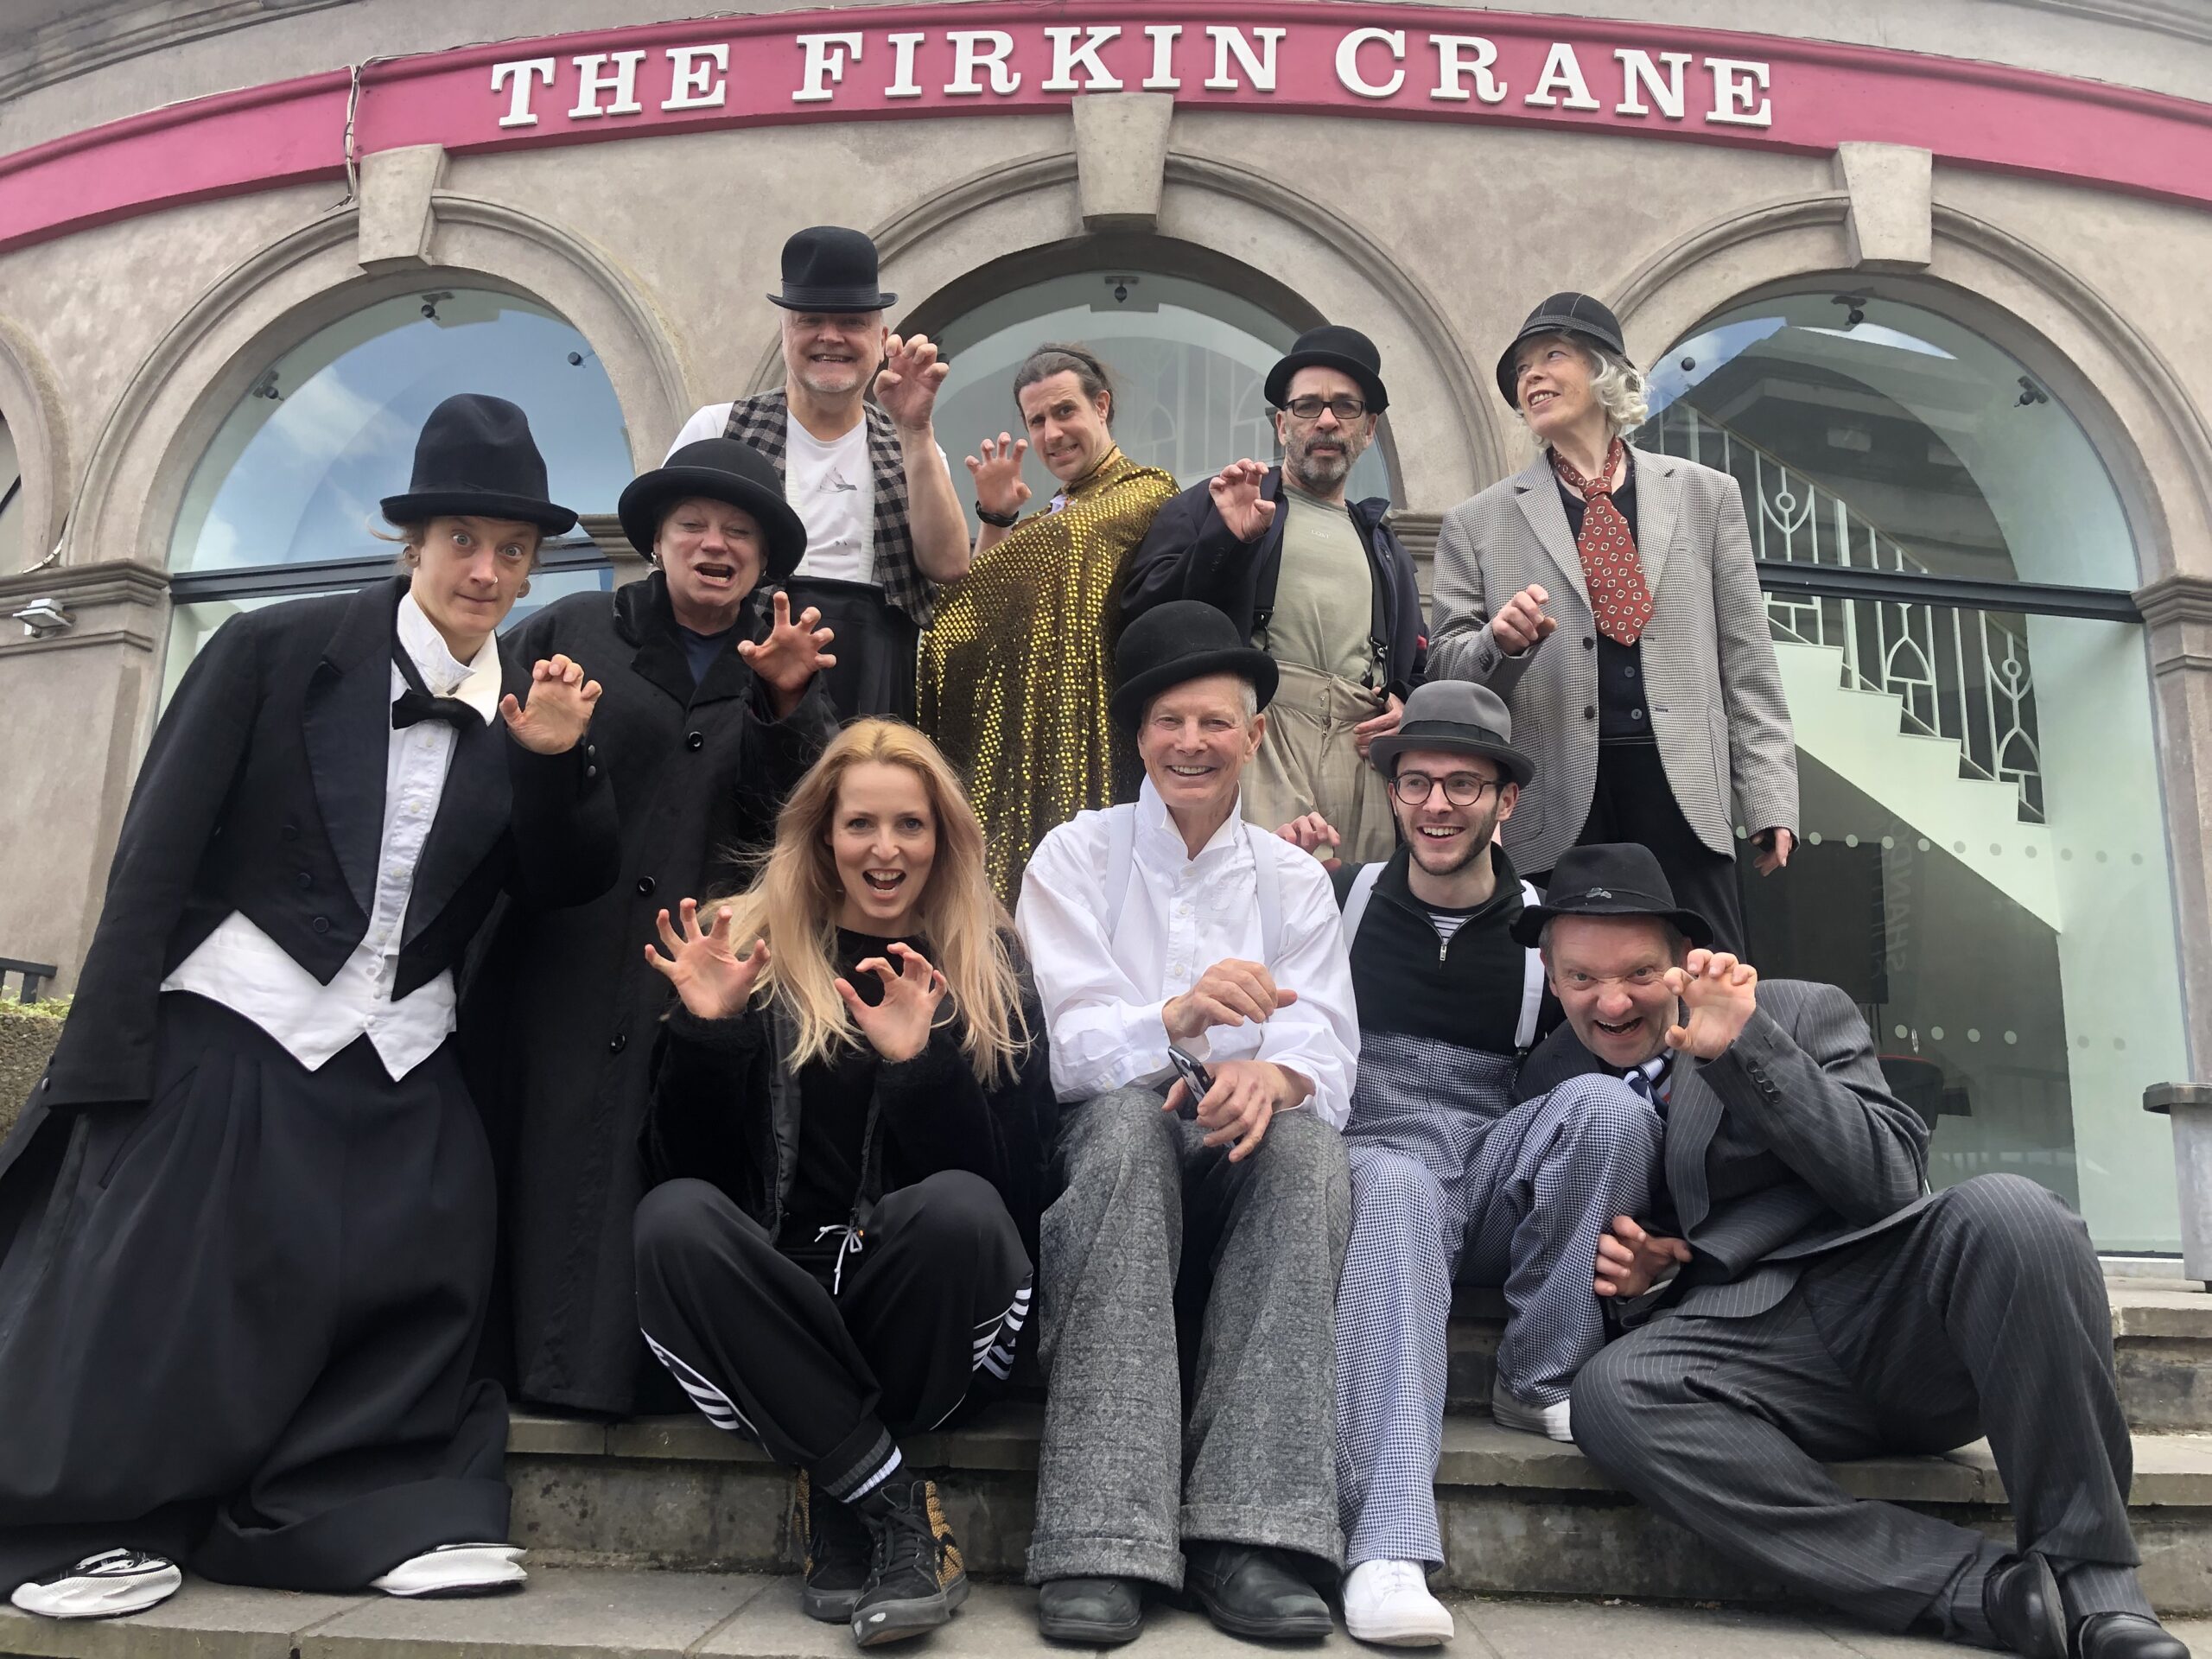 Firkin Crane Theatre, Cork: Vaudeville Legend Returns to Cork!